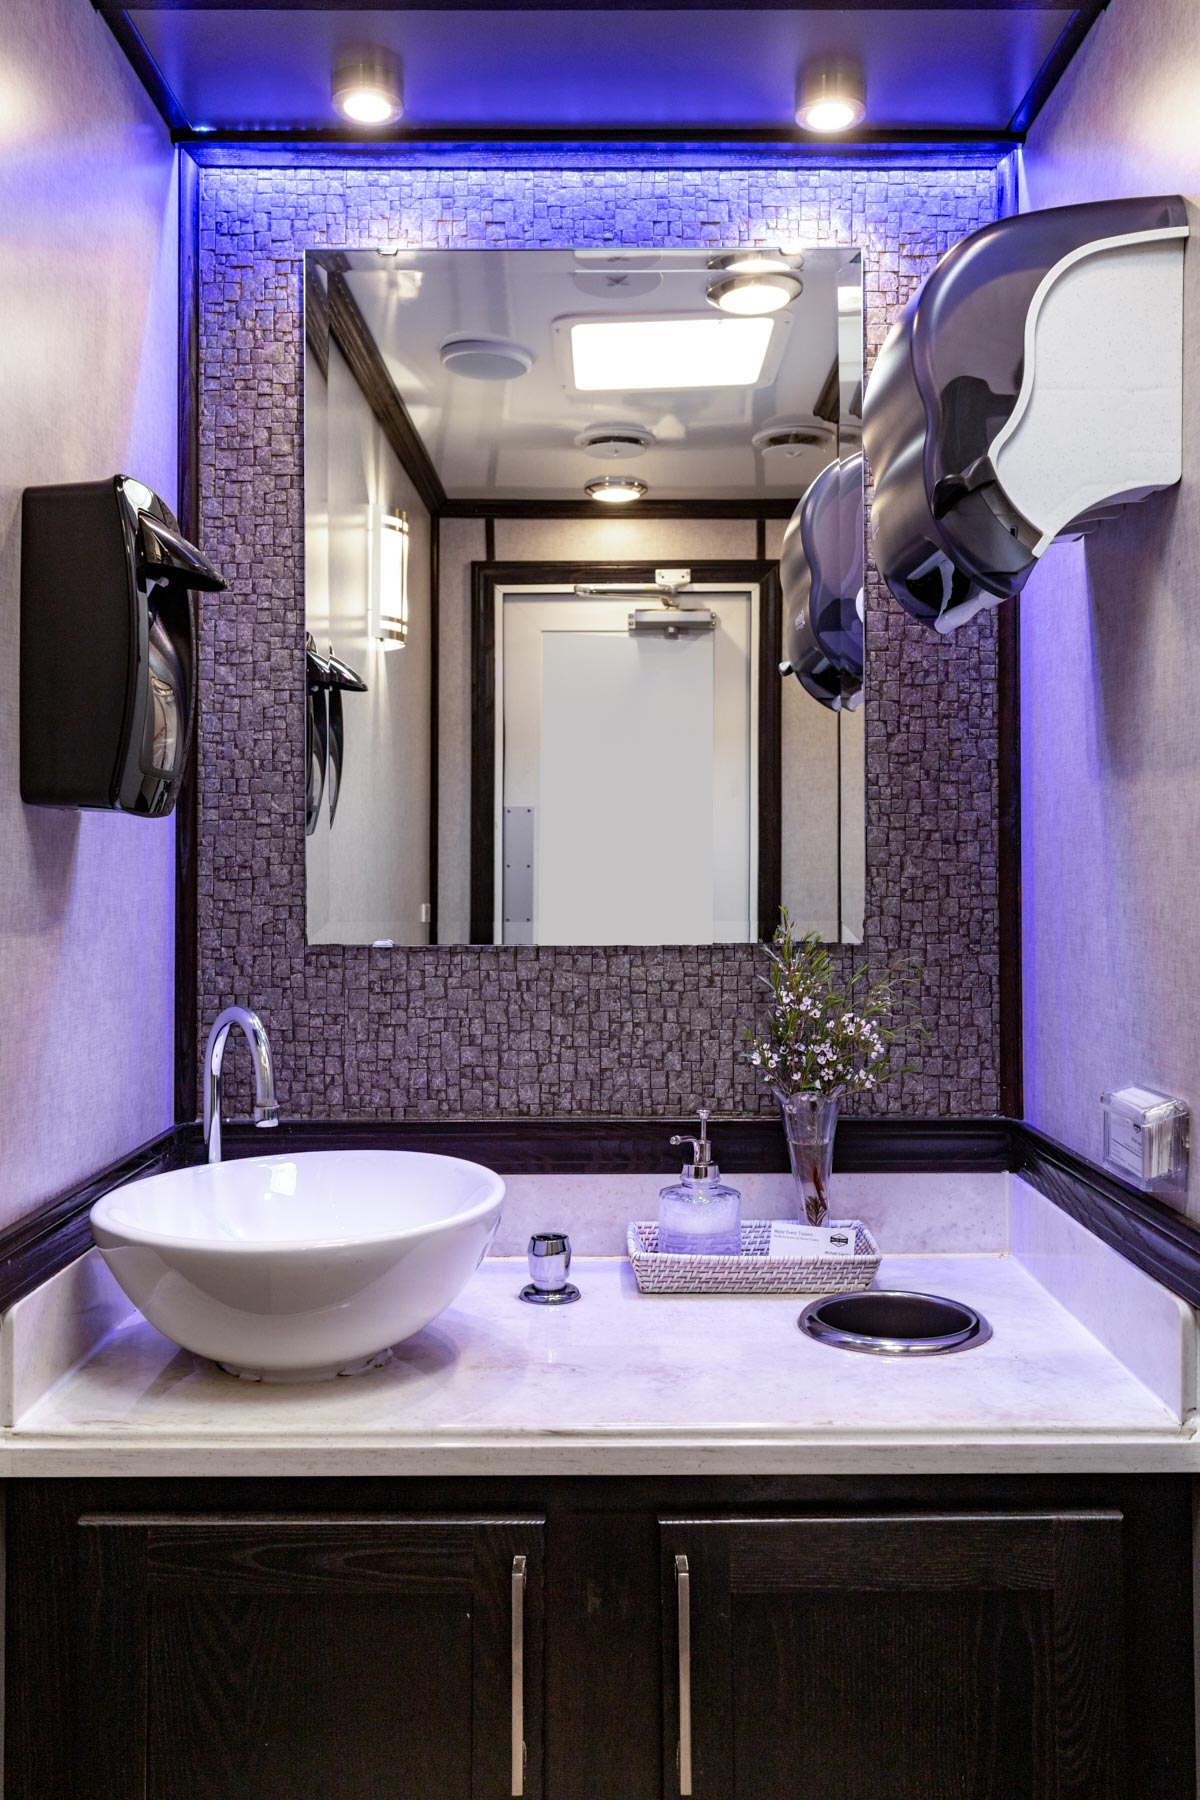 2-Station Luxury Restroom Trailer Rental – Interior View 5